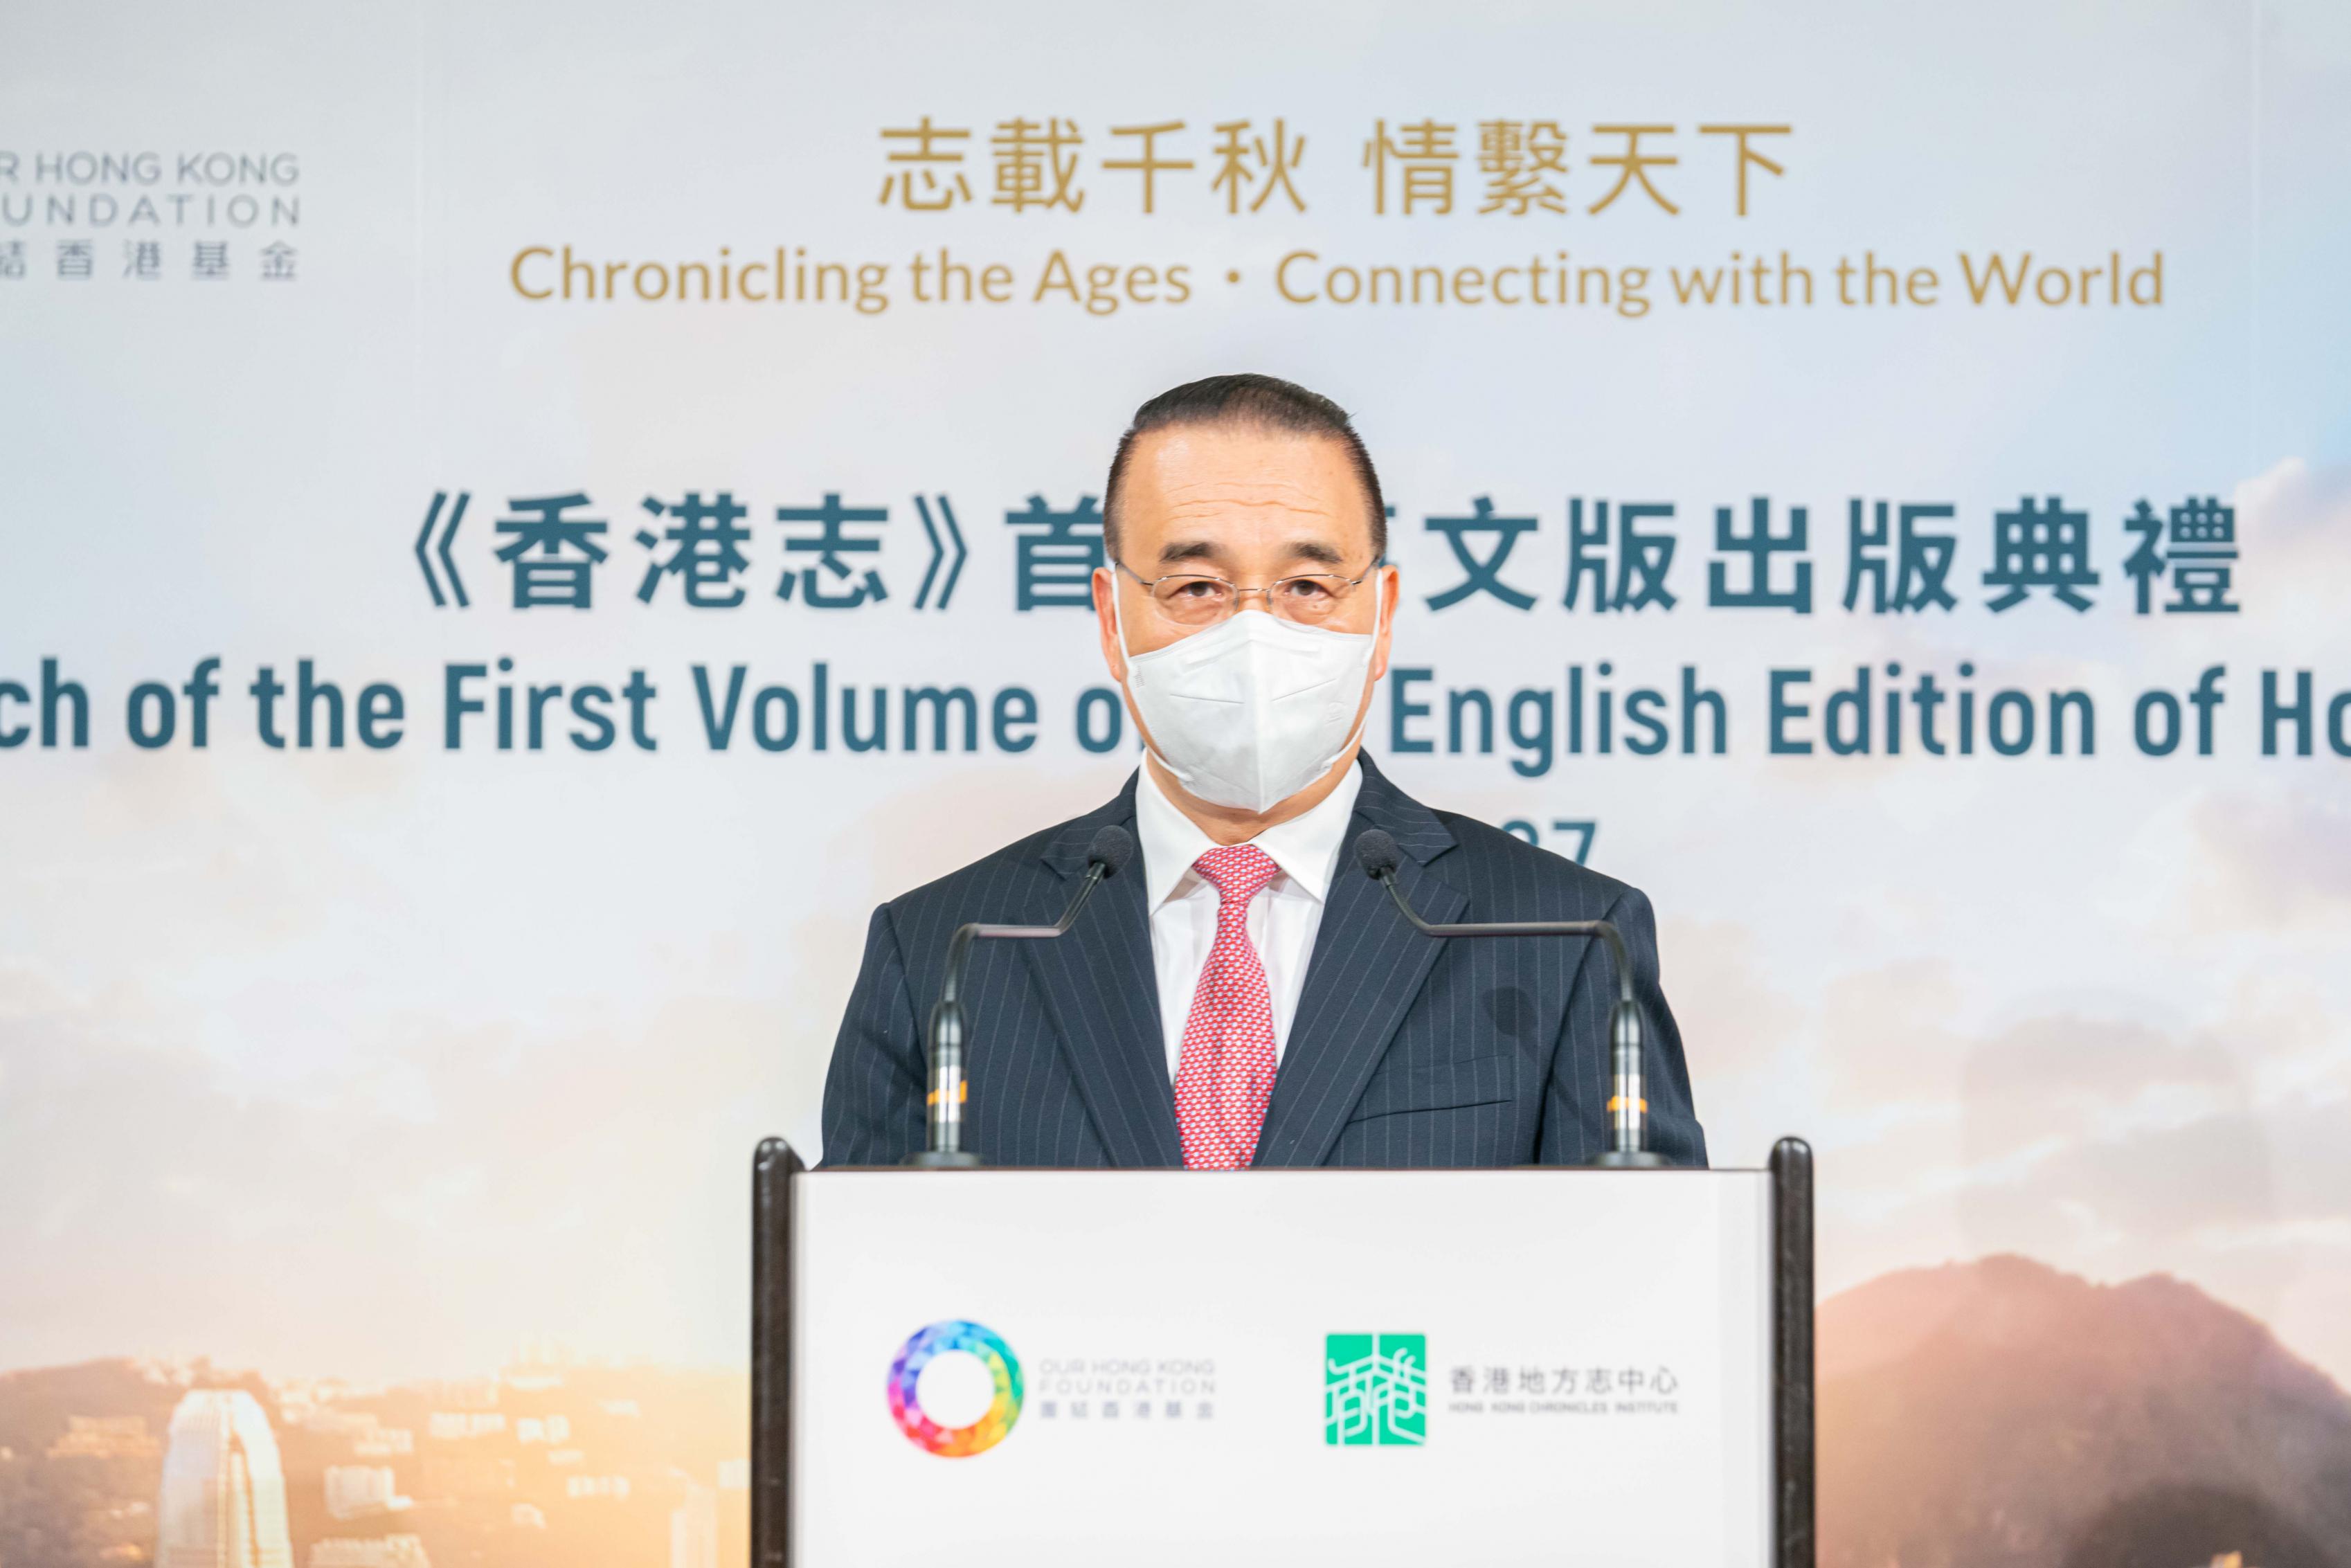 中華人民共和國外交部駐香港特別行政區特派員公署特派員劉光源先生於《香港志》首冊英文版出版典禮上發表主題演講。